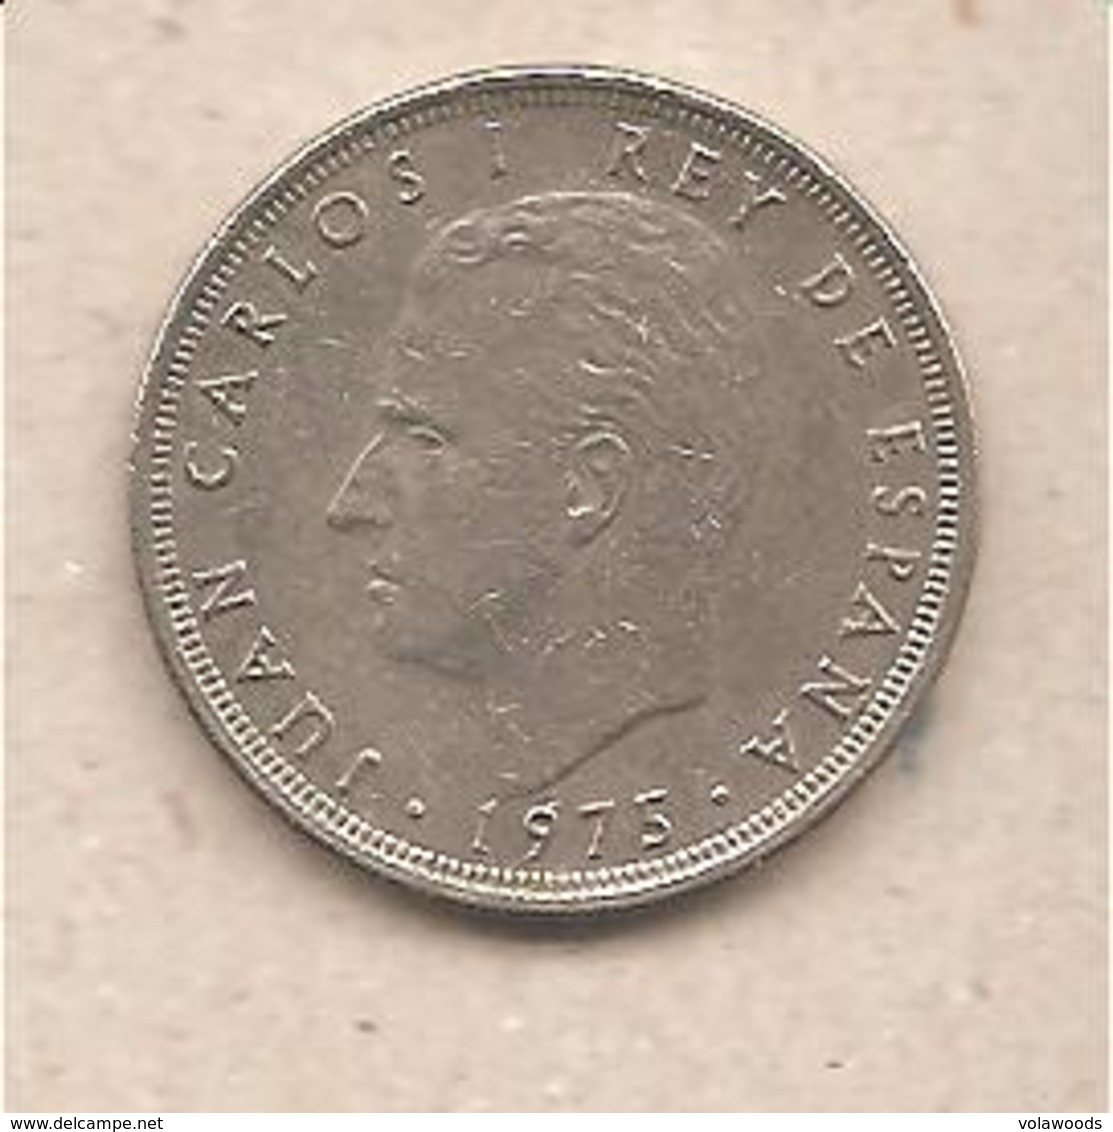 Spagna - Moneta Circolata Da 25 Pesetas - 1980 - 25 Pesetas